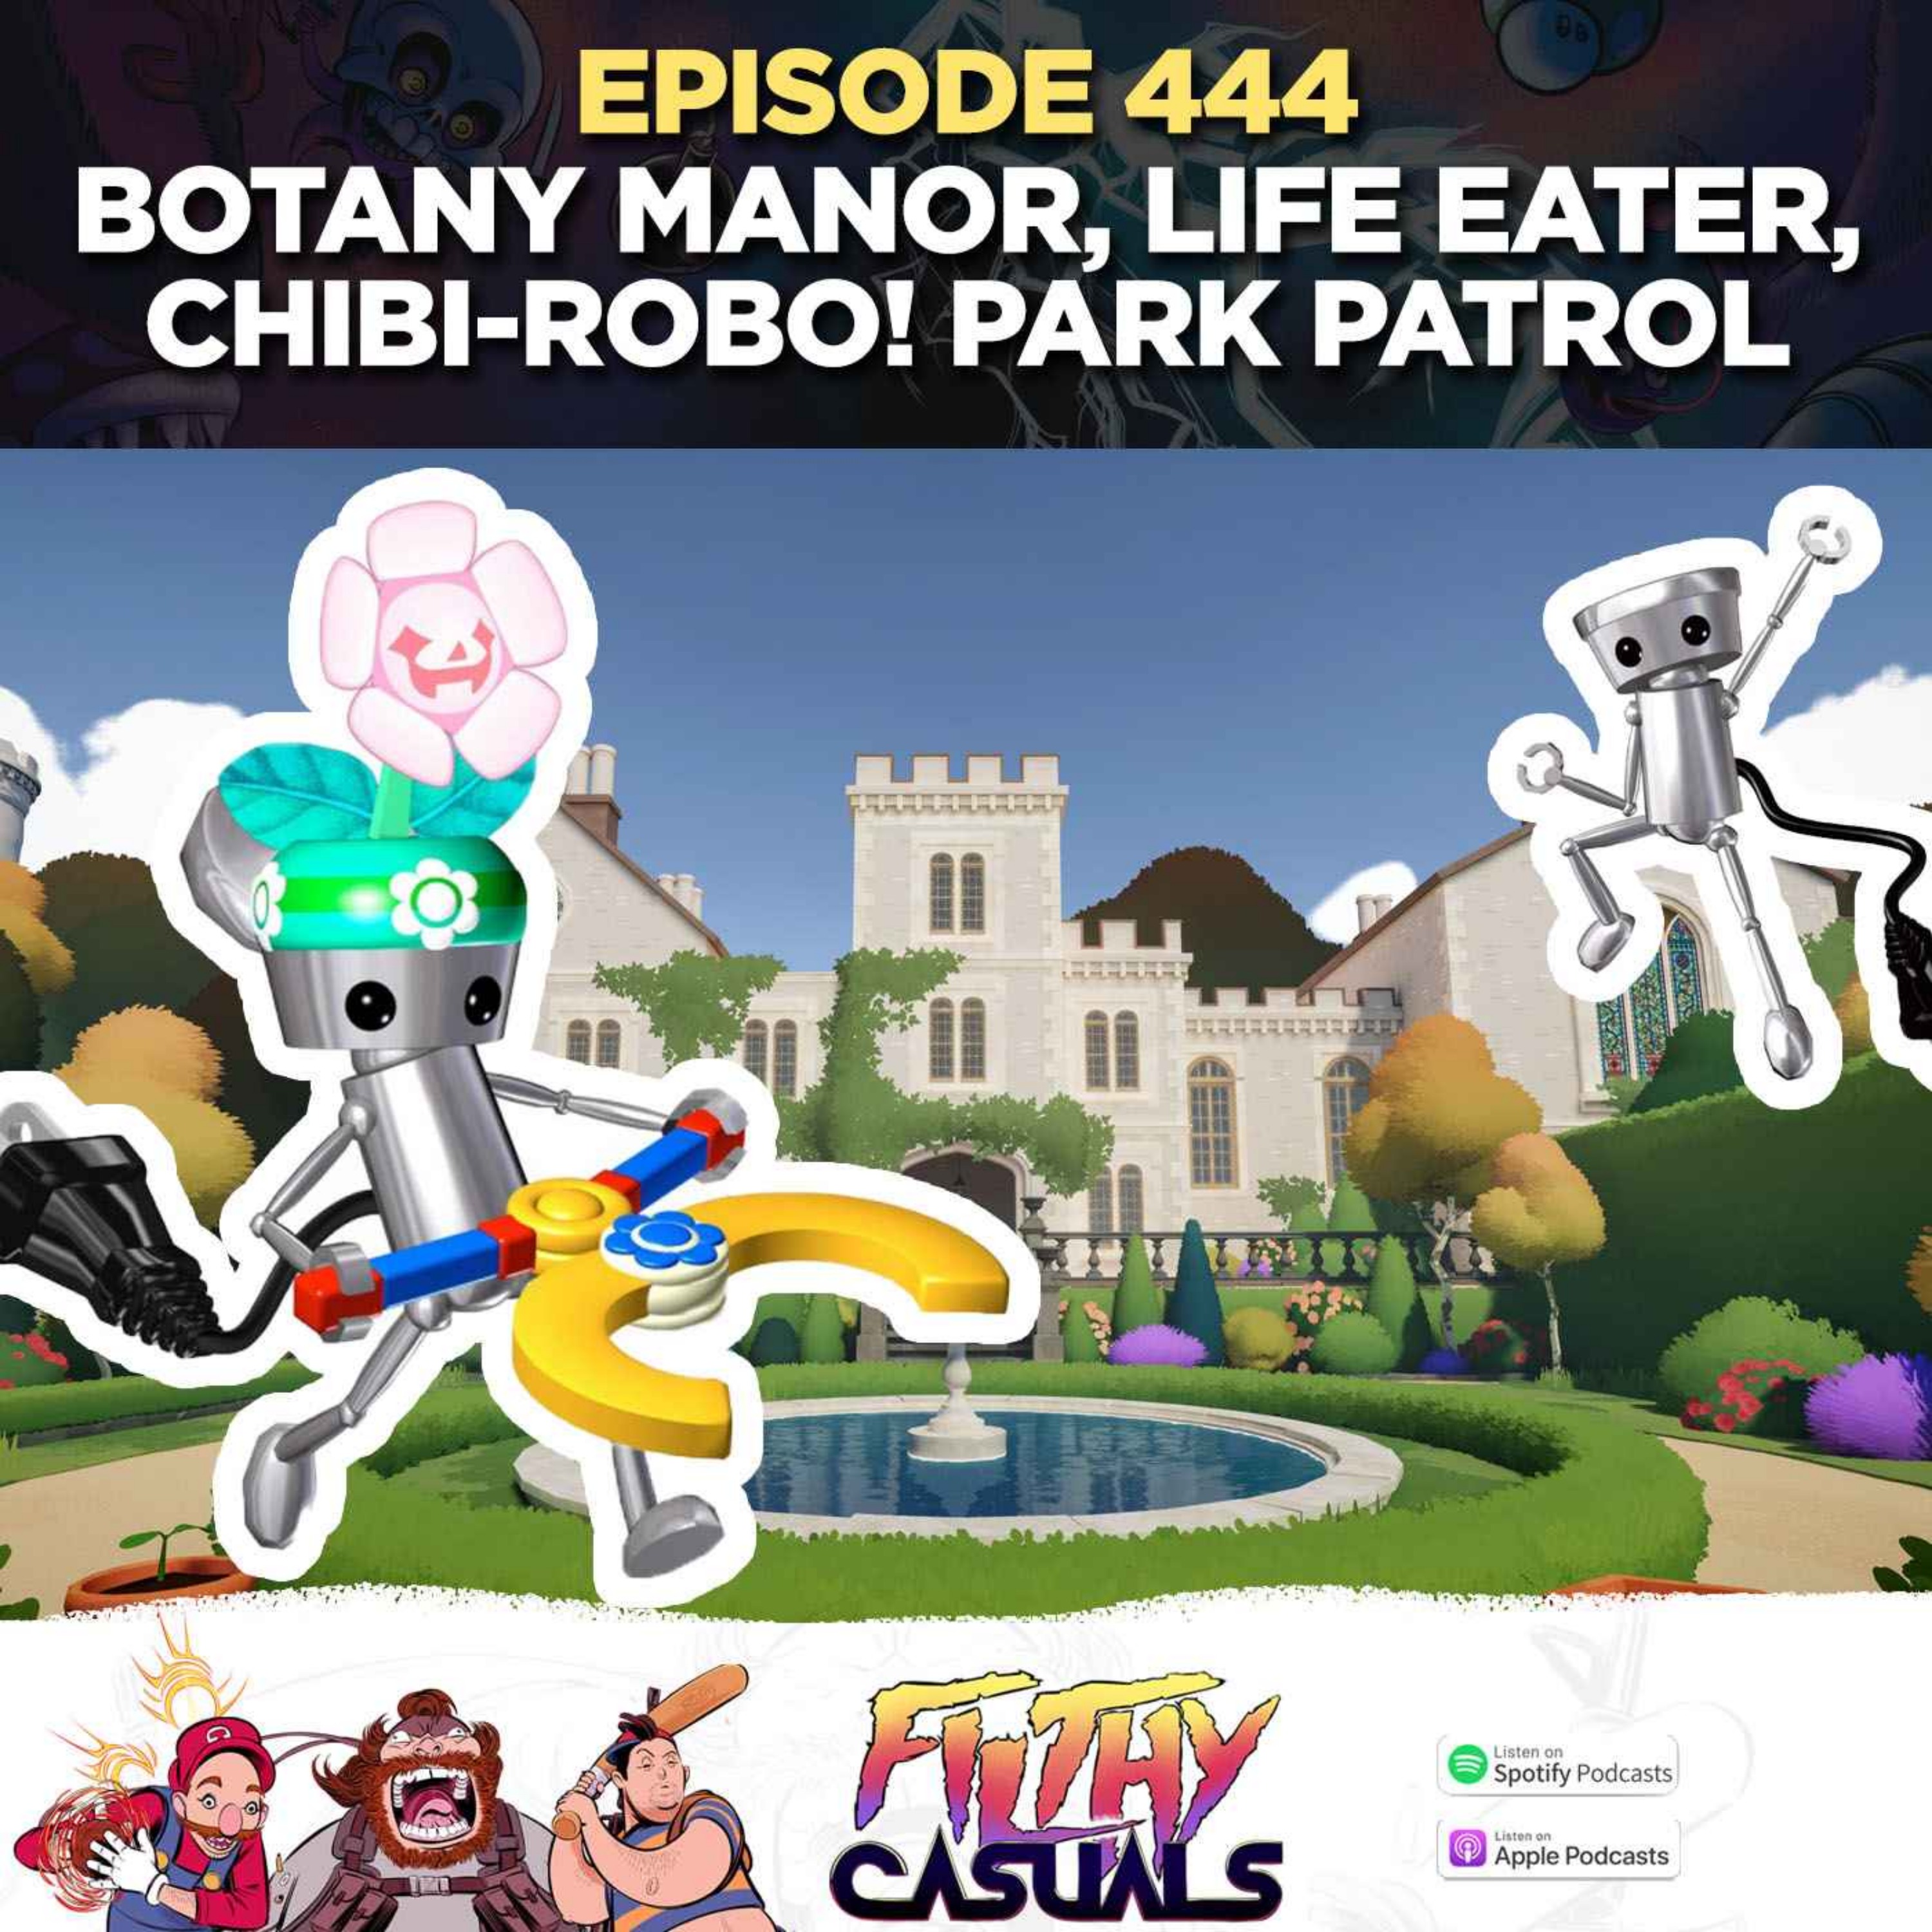 Episode 444: Botany Manor, Life Eater, Chibi-Robo!